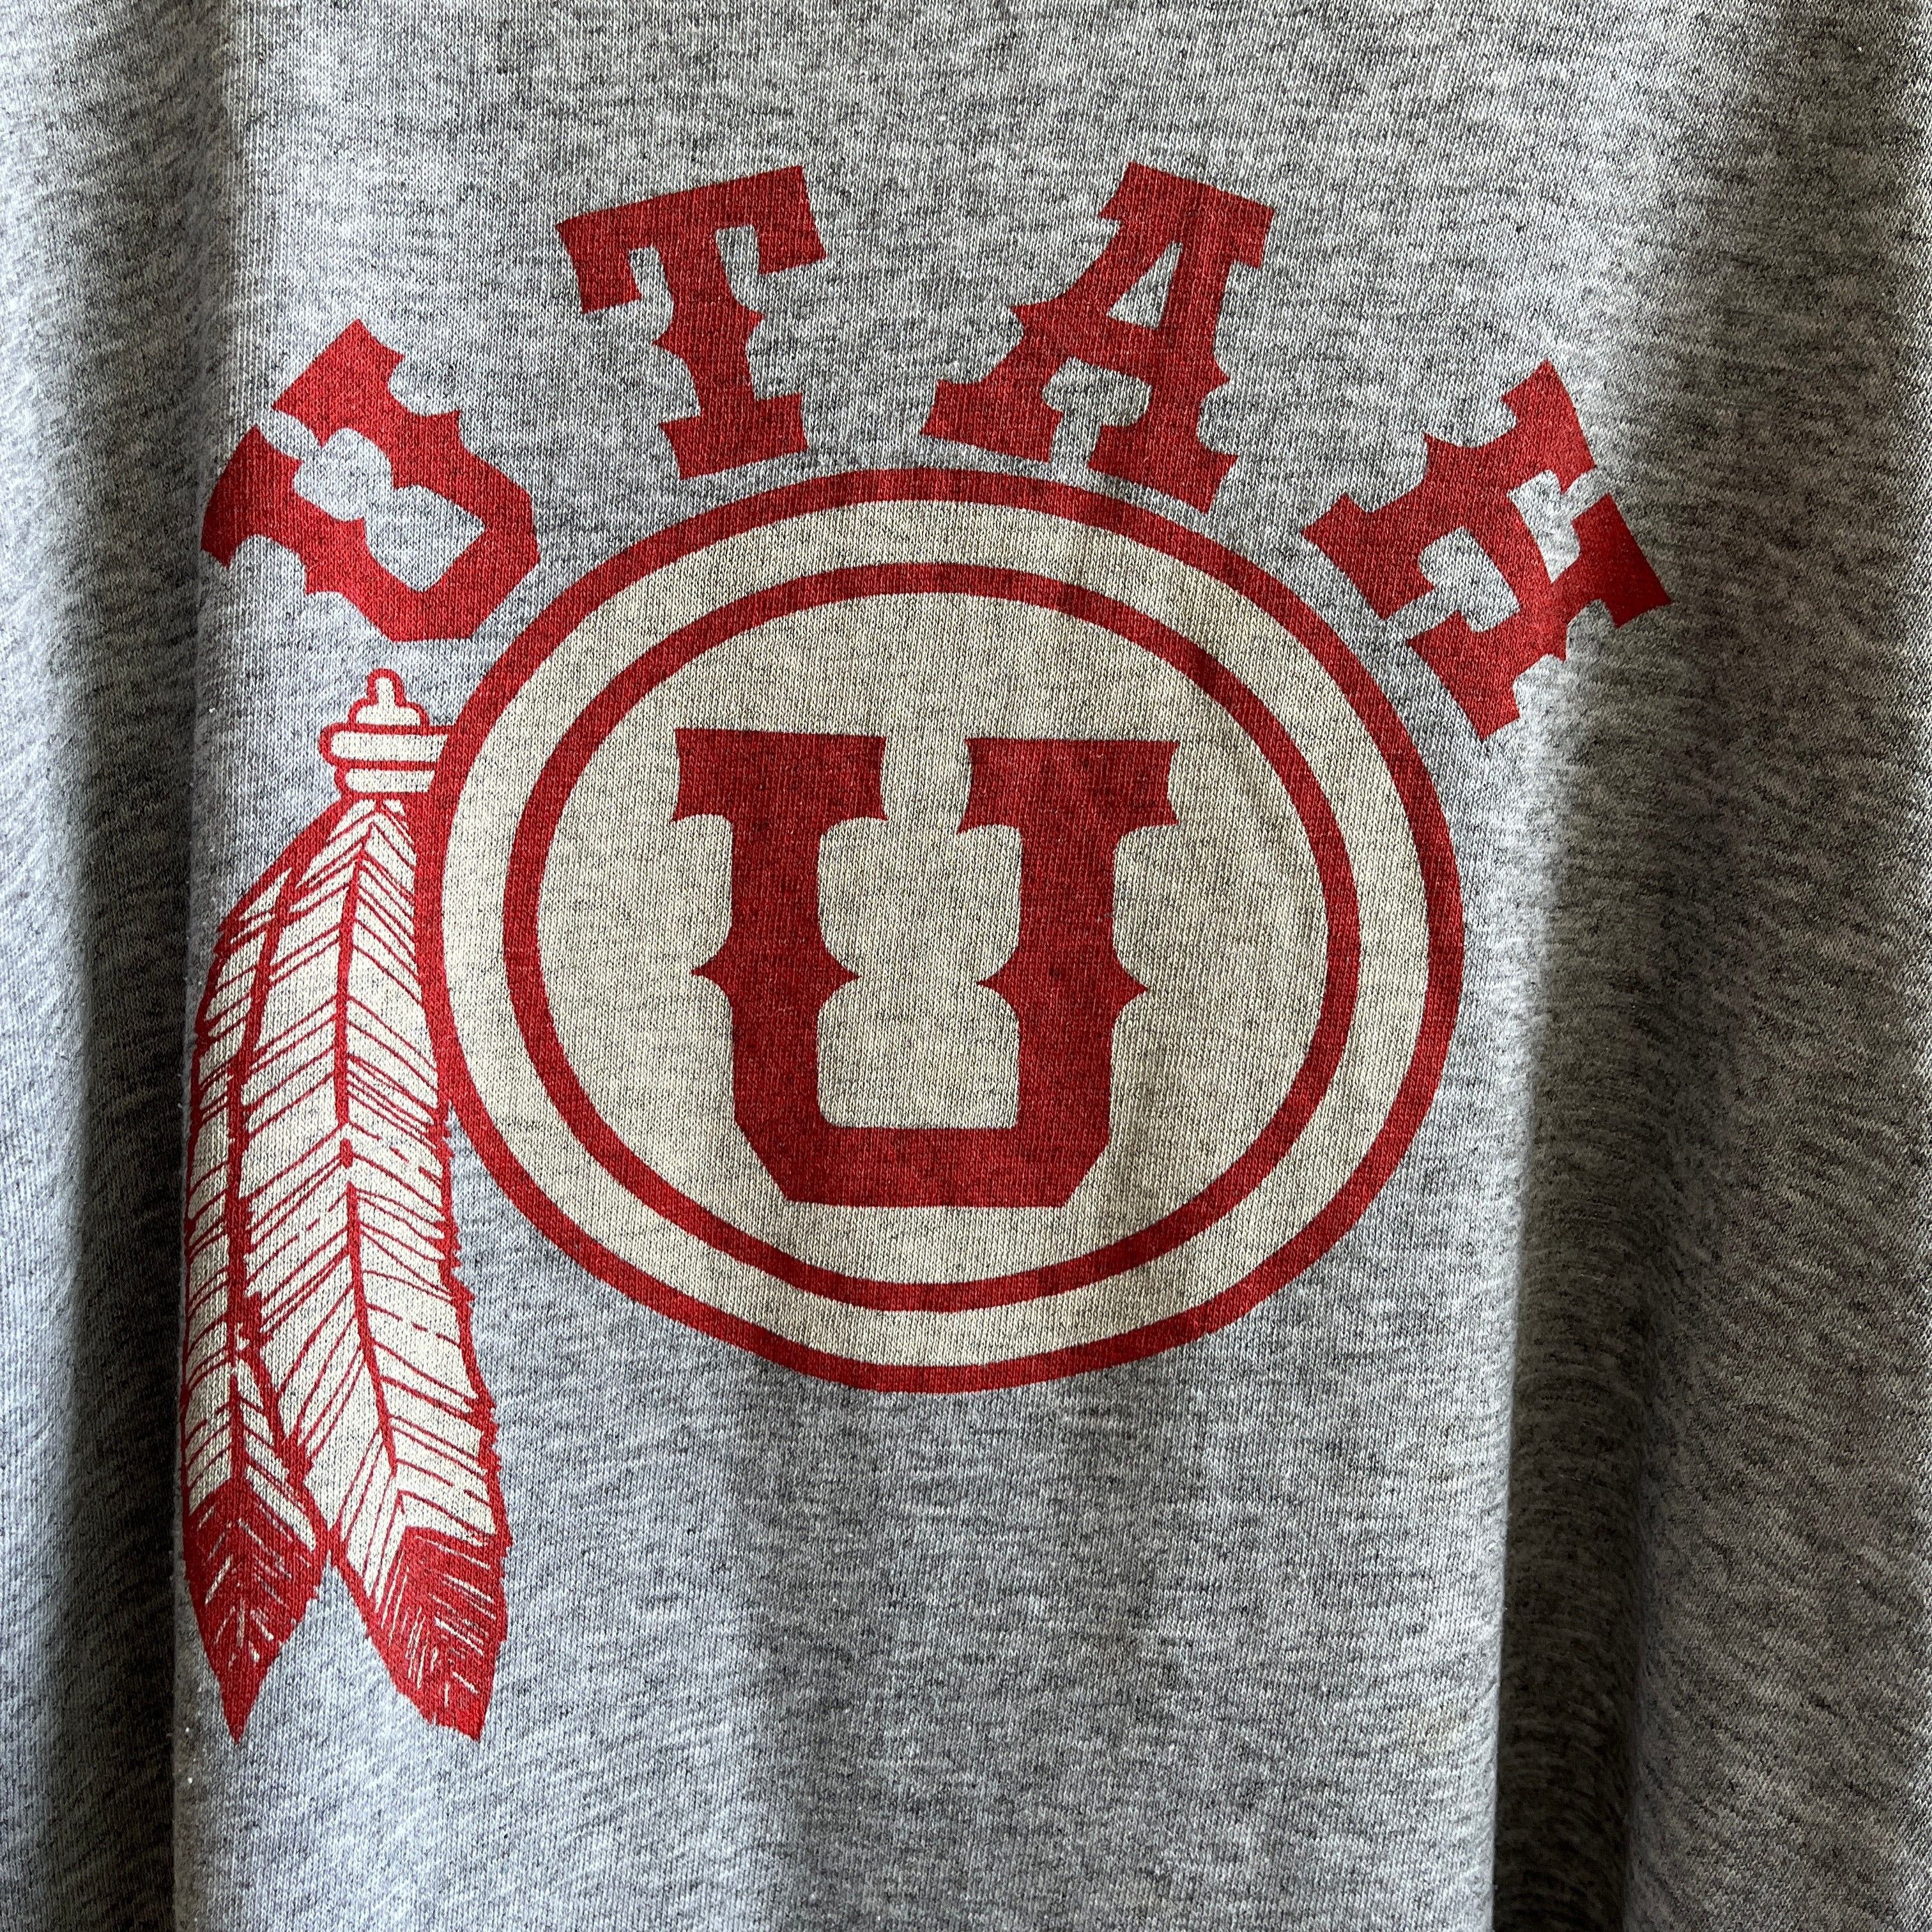 T-shirt de style football Utah des années 1970 - mince !